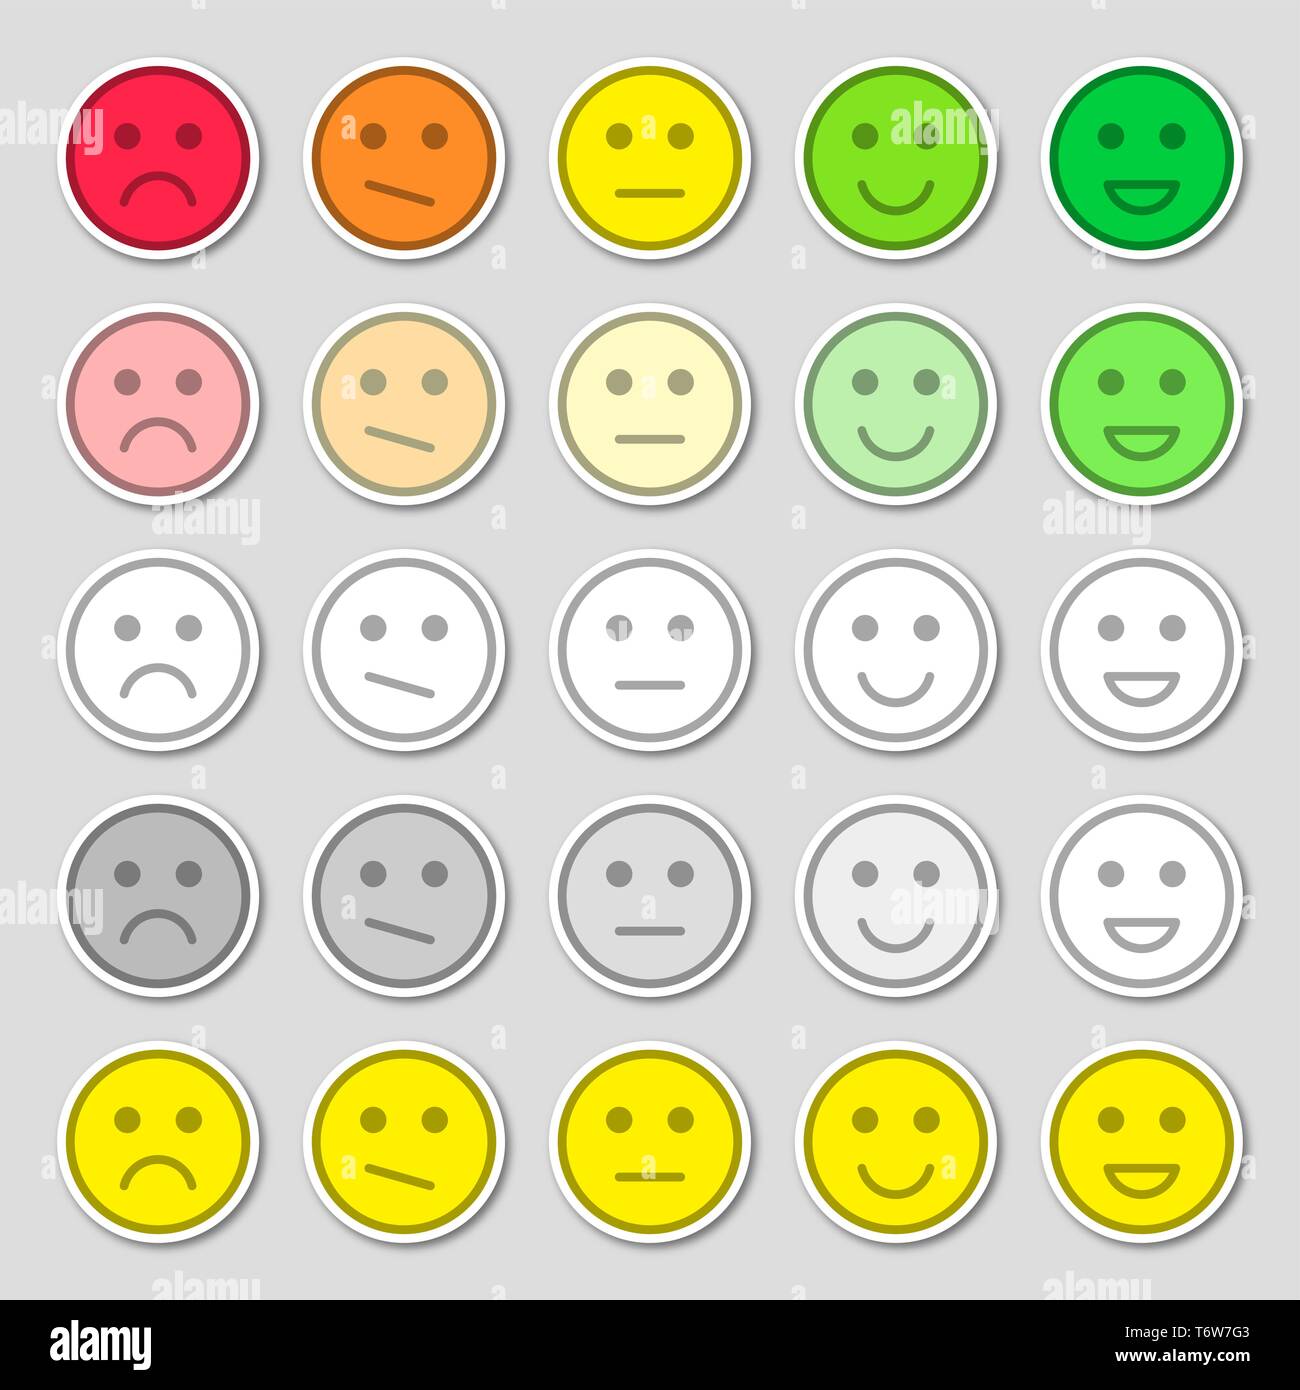 Der flache Emoji Icons. Vector Illustration. Glücklich, traurig und Stimmung. Abstimmung Skala Symbole gesetzt. Stock Vektor